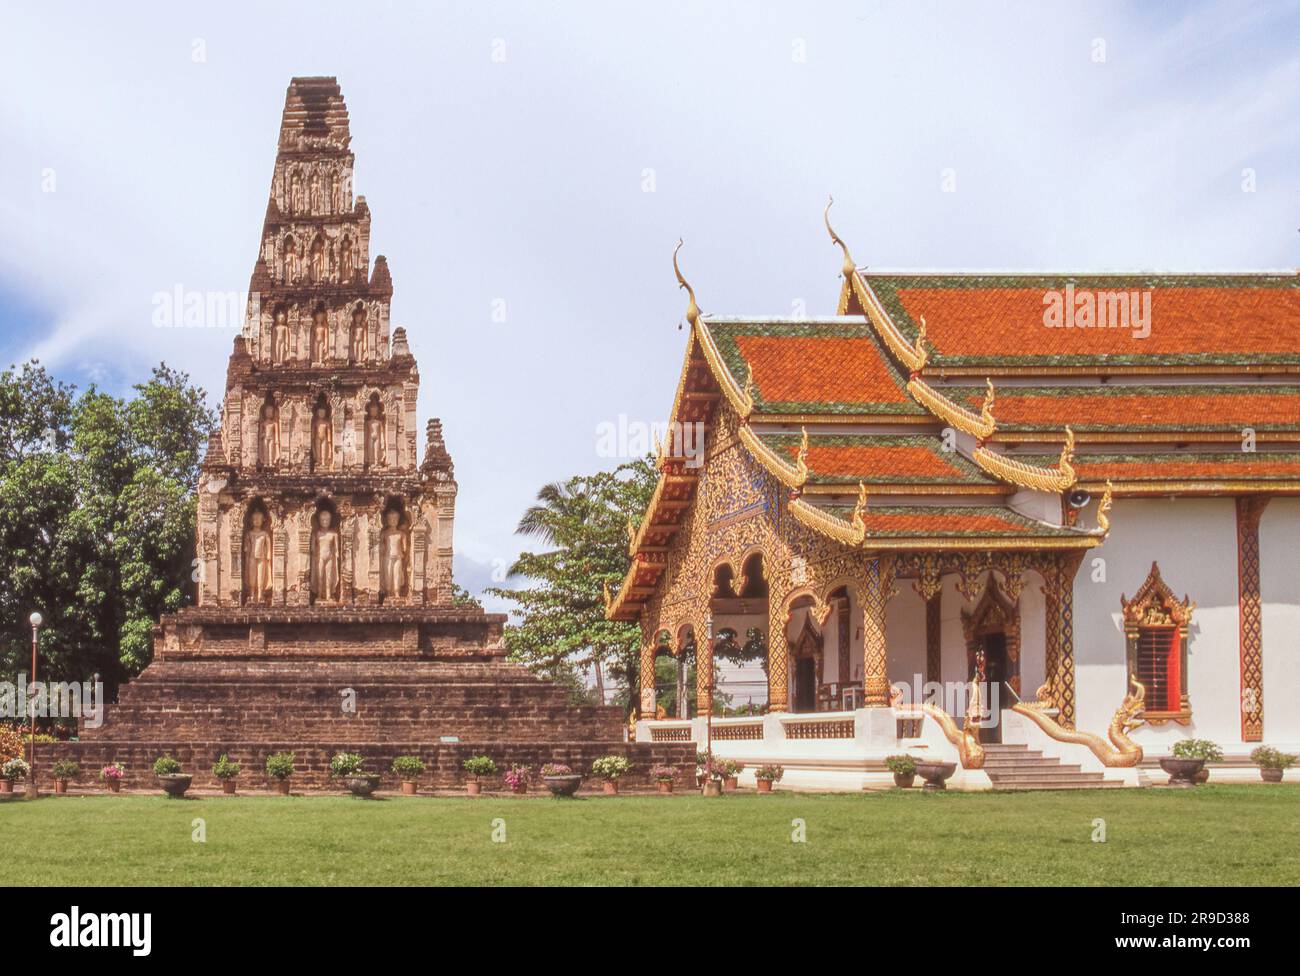 Le principal chedi à Wat Chama Thewi, dans l'ancienne ville de Lamphun, dans le nord de la Thaïlande, orné d'images de Bouddha. Banque D'Images